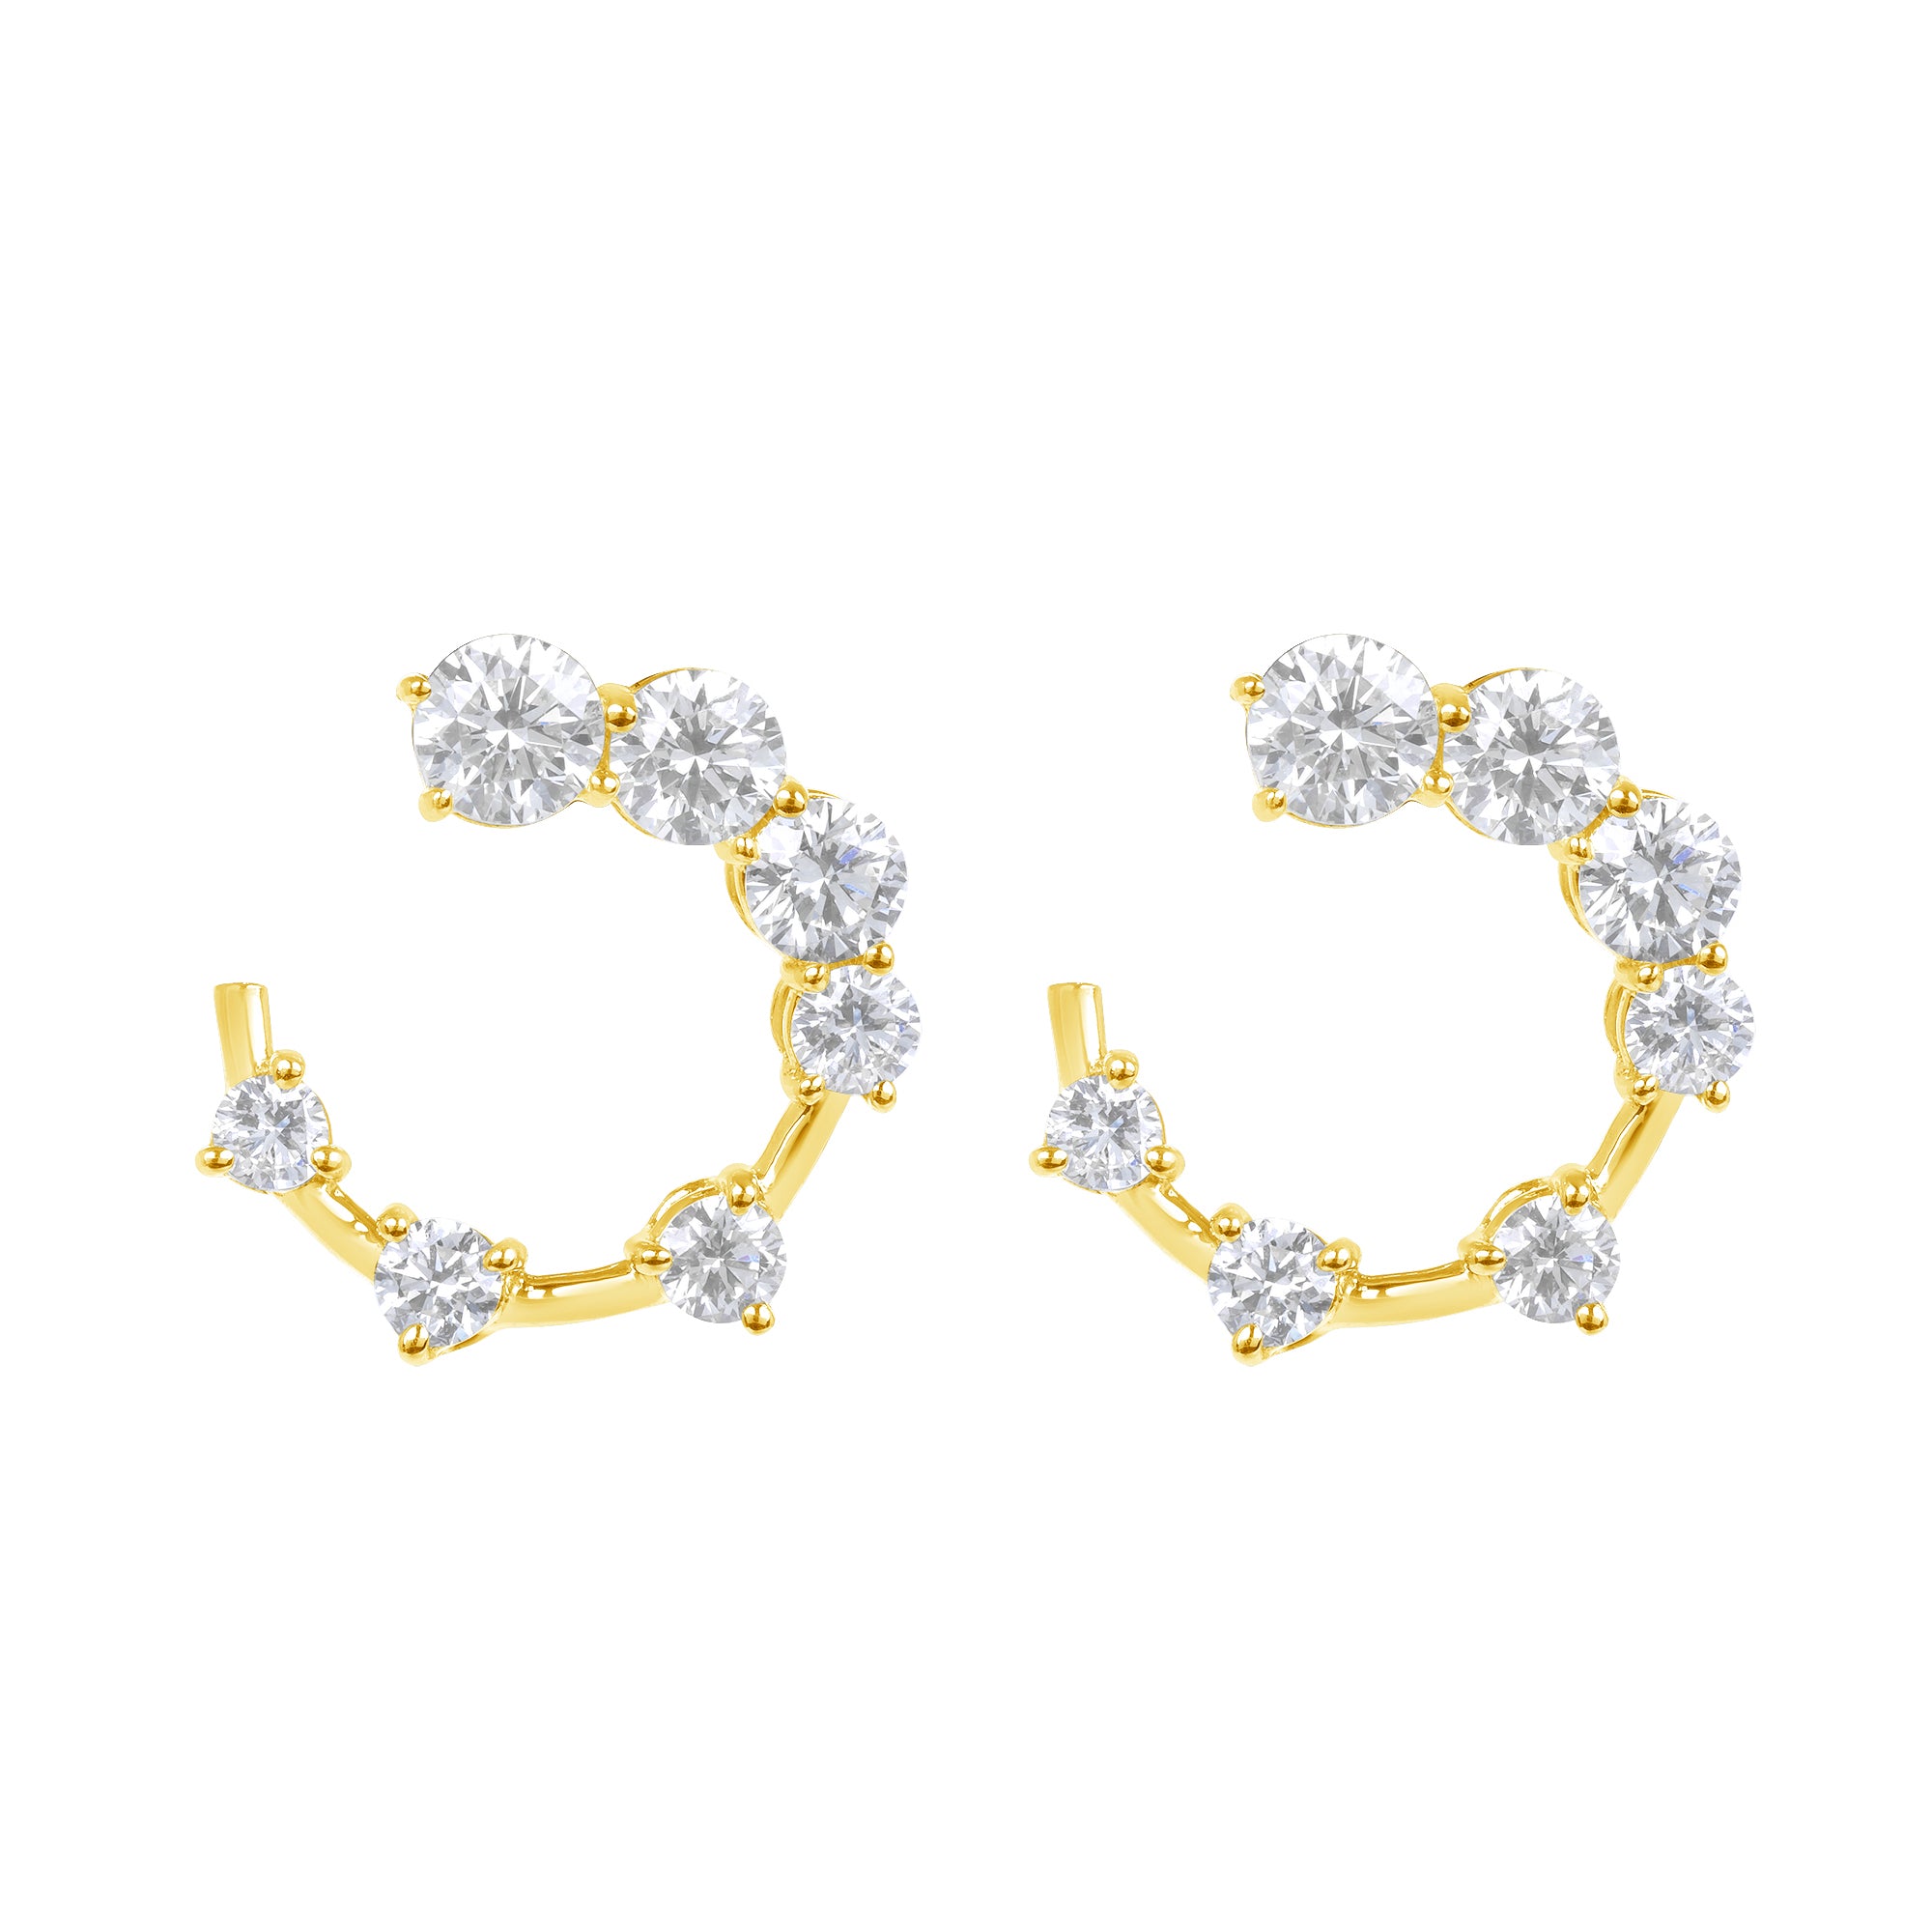 Round Brilliant Cut Diamond Open Hoop Swirl Earrings in 18K Yellow Gold